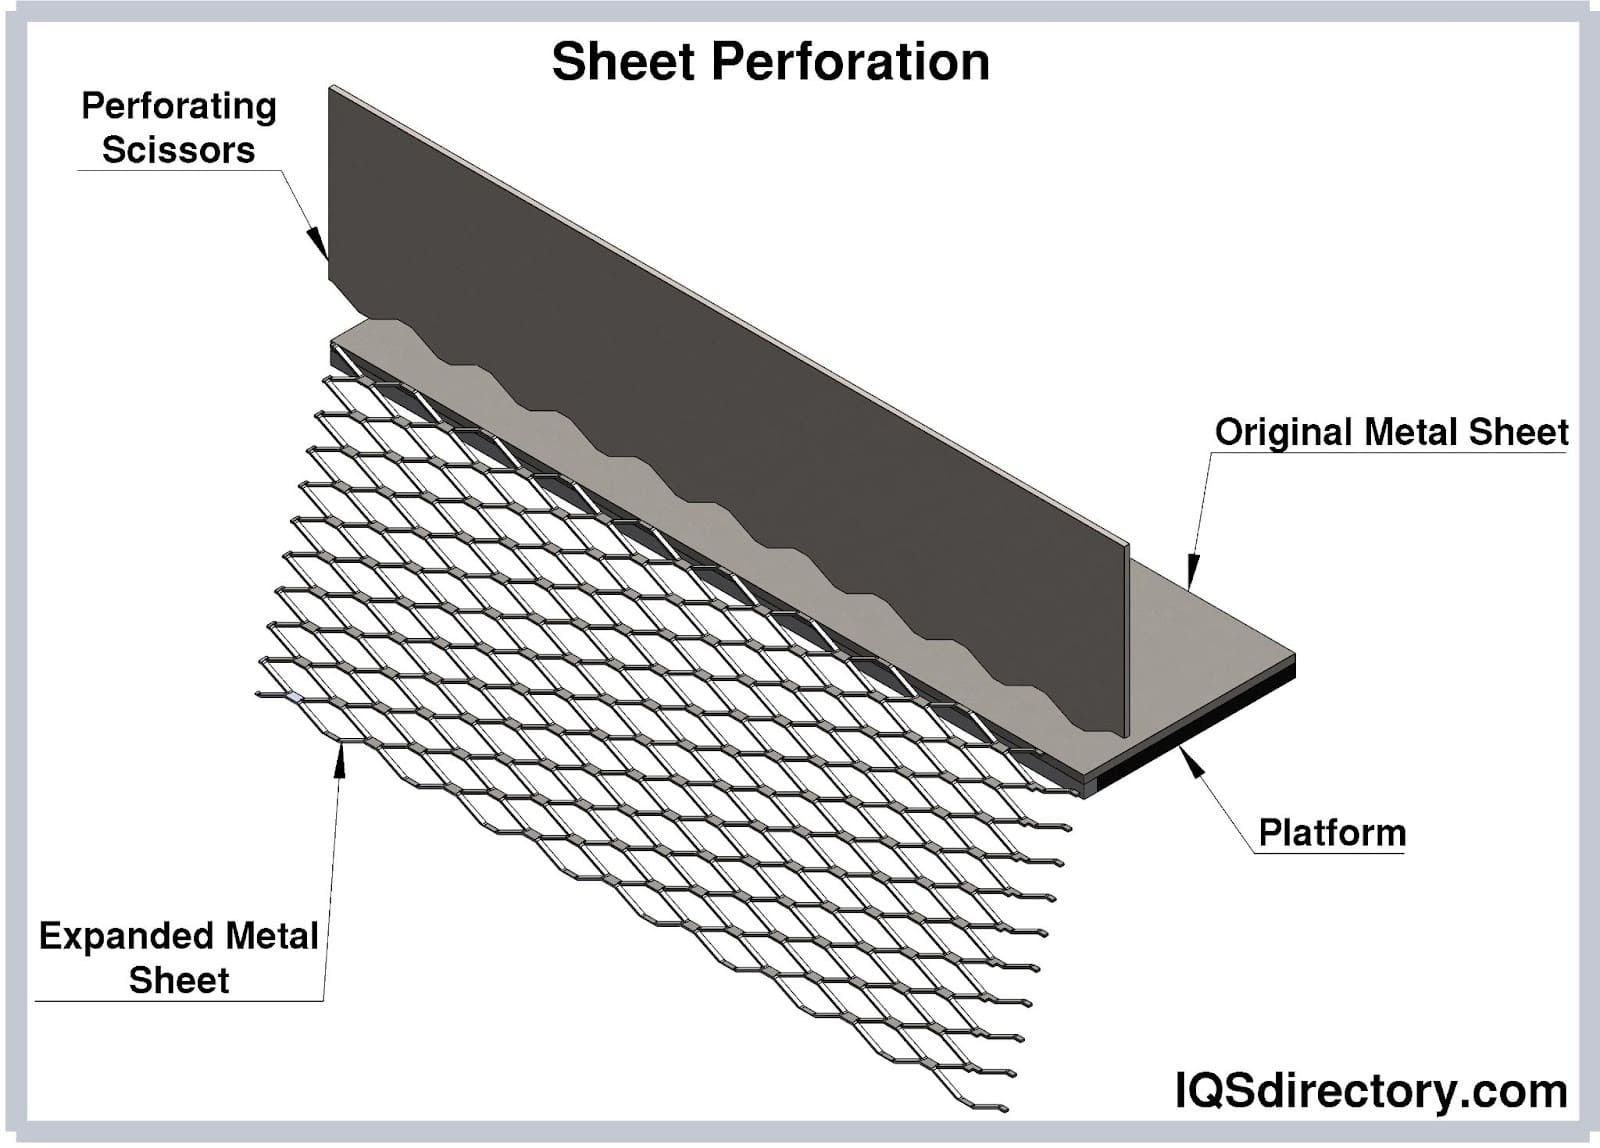 Sheet Perforation